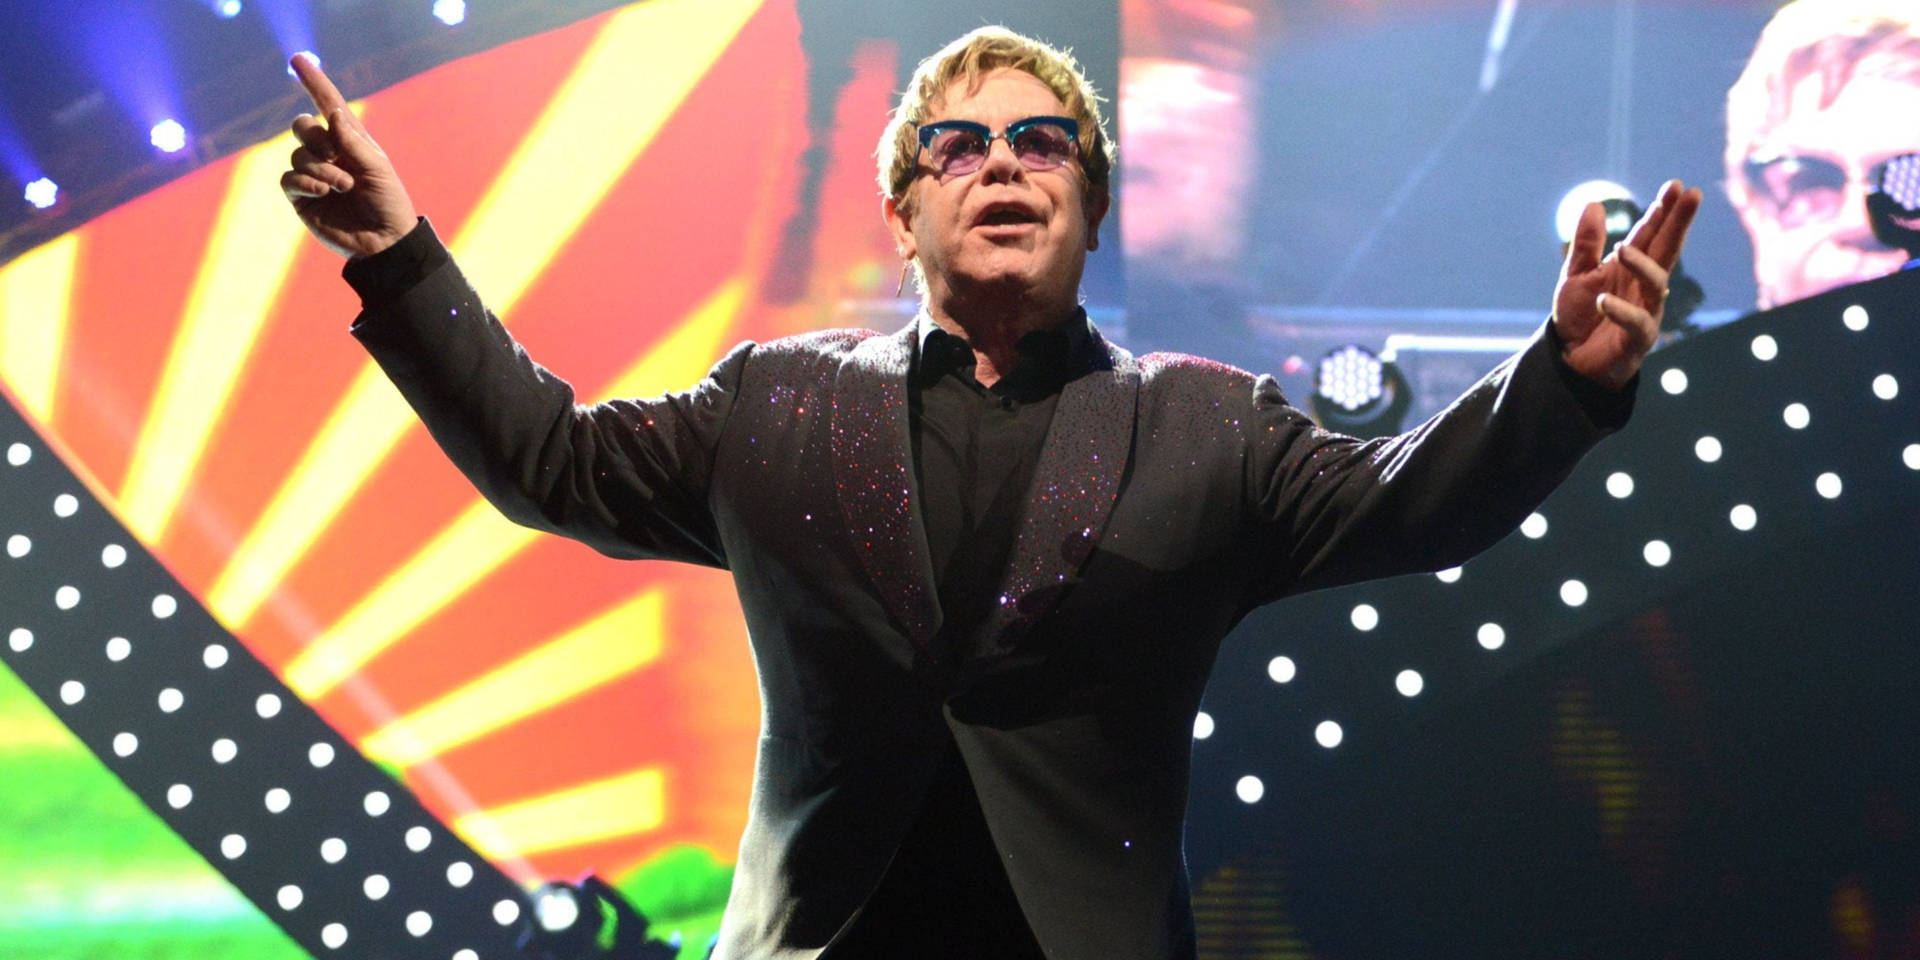 Elton John Soft Rock Concert Background